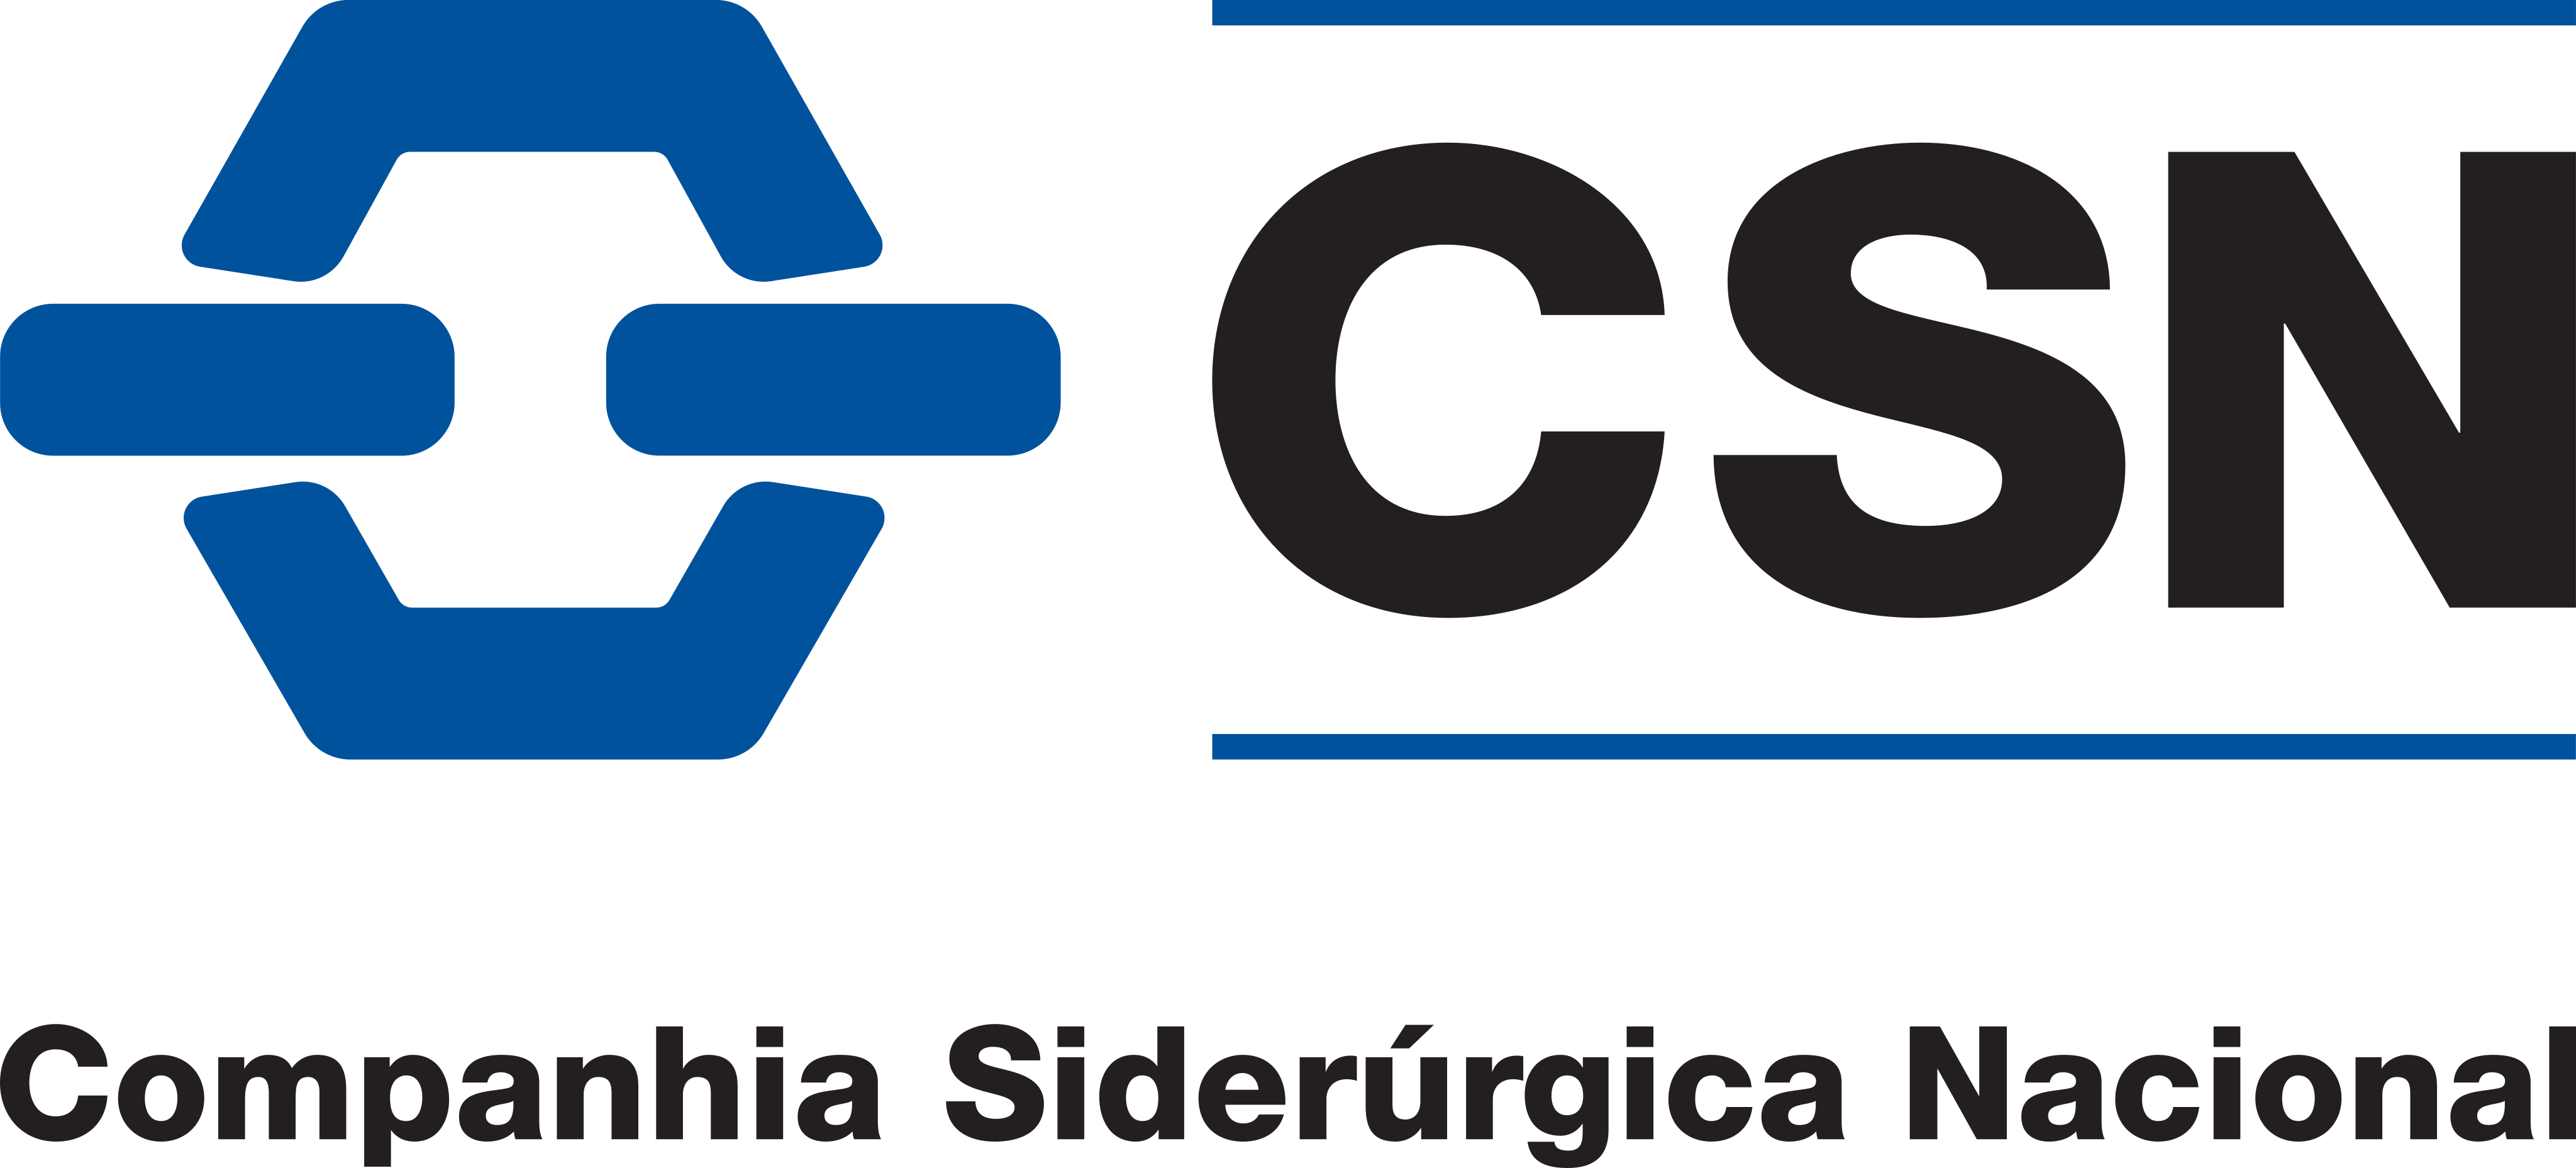 CSN Logo.